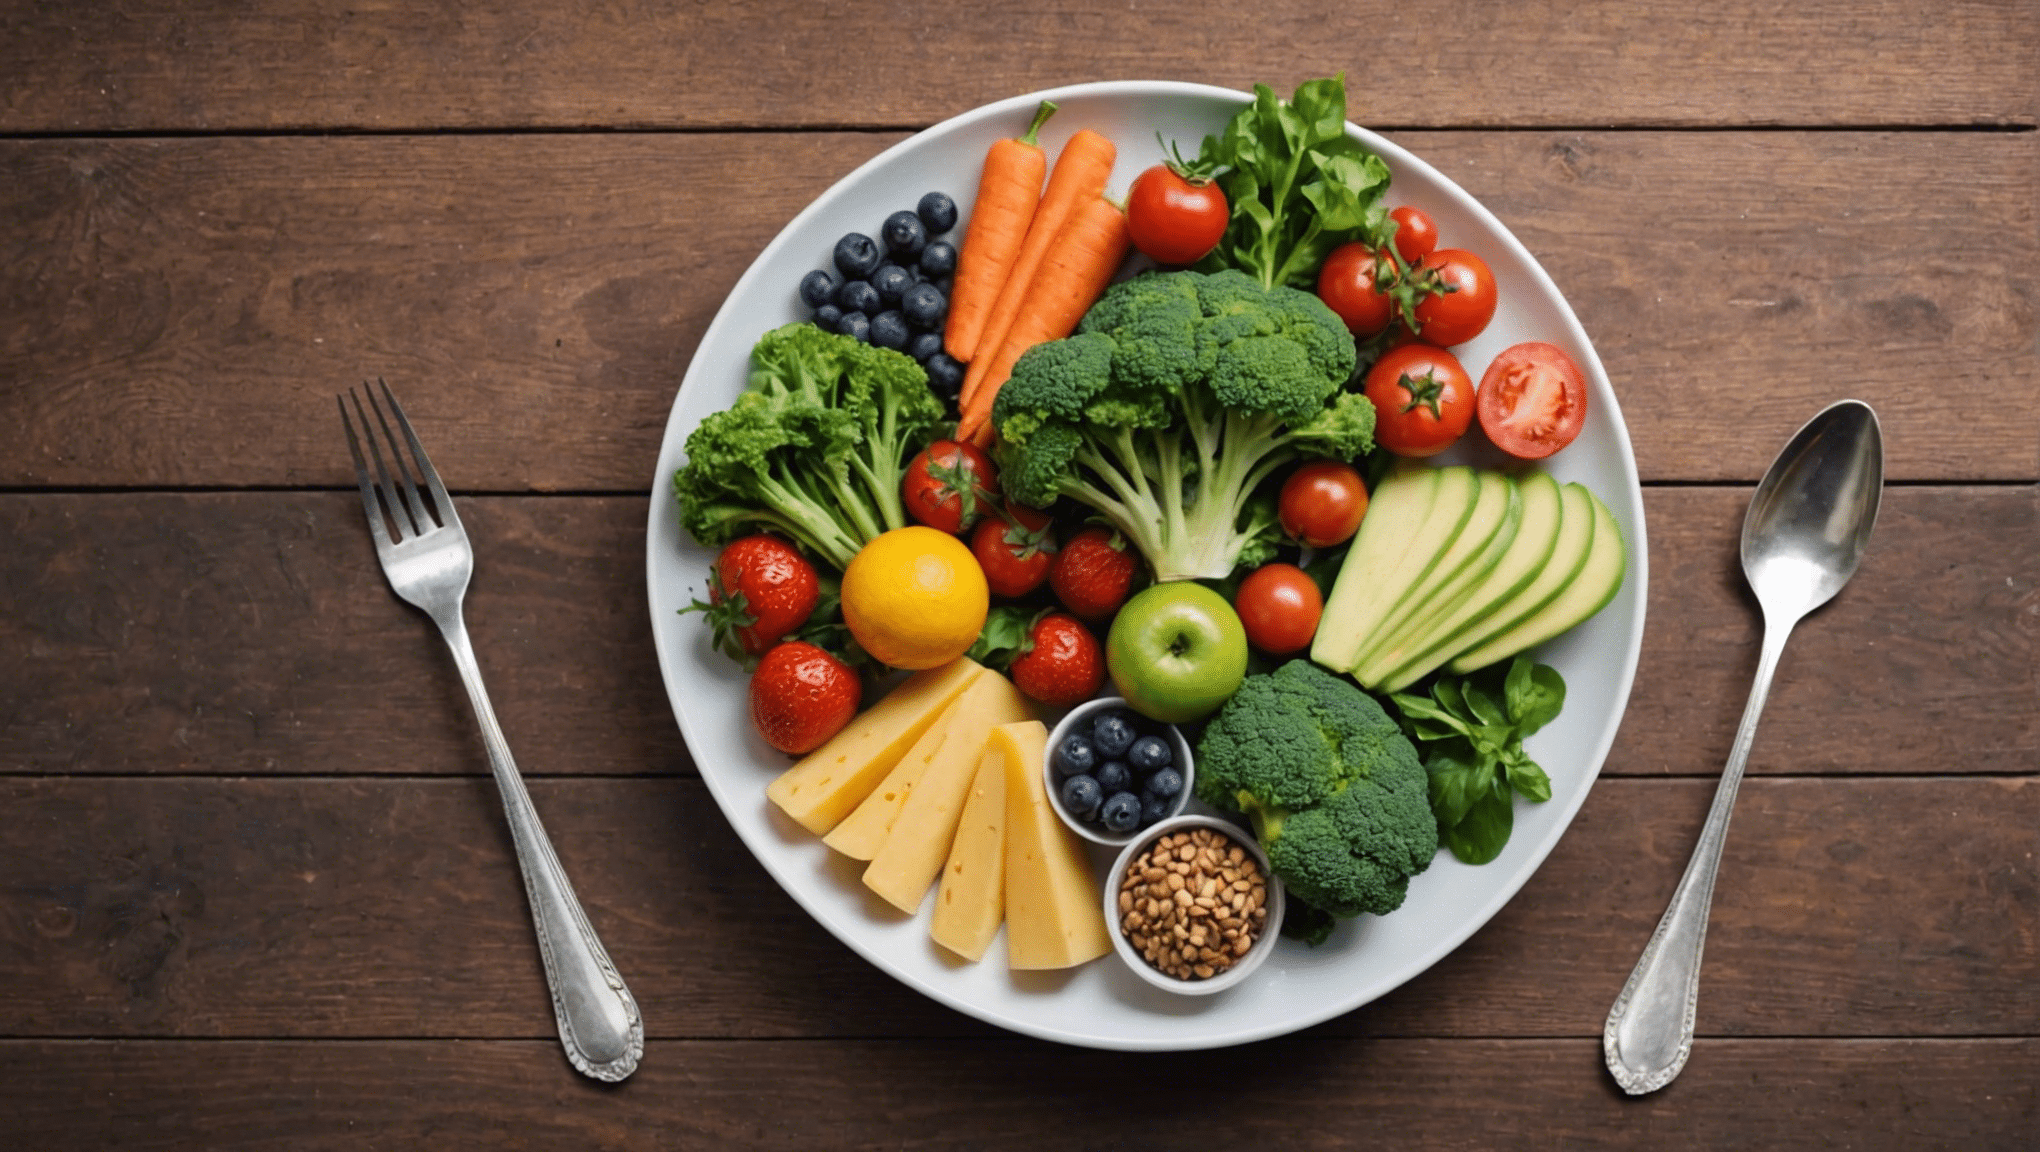 découvrez les secrets d'une alimentation saine pour une vie équilibrée. apprenez à choisir les aliments qui vous aident à rester en forme et en santé.